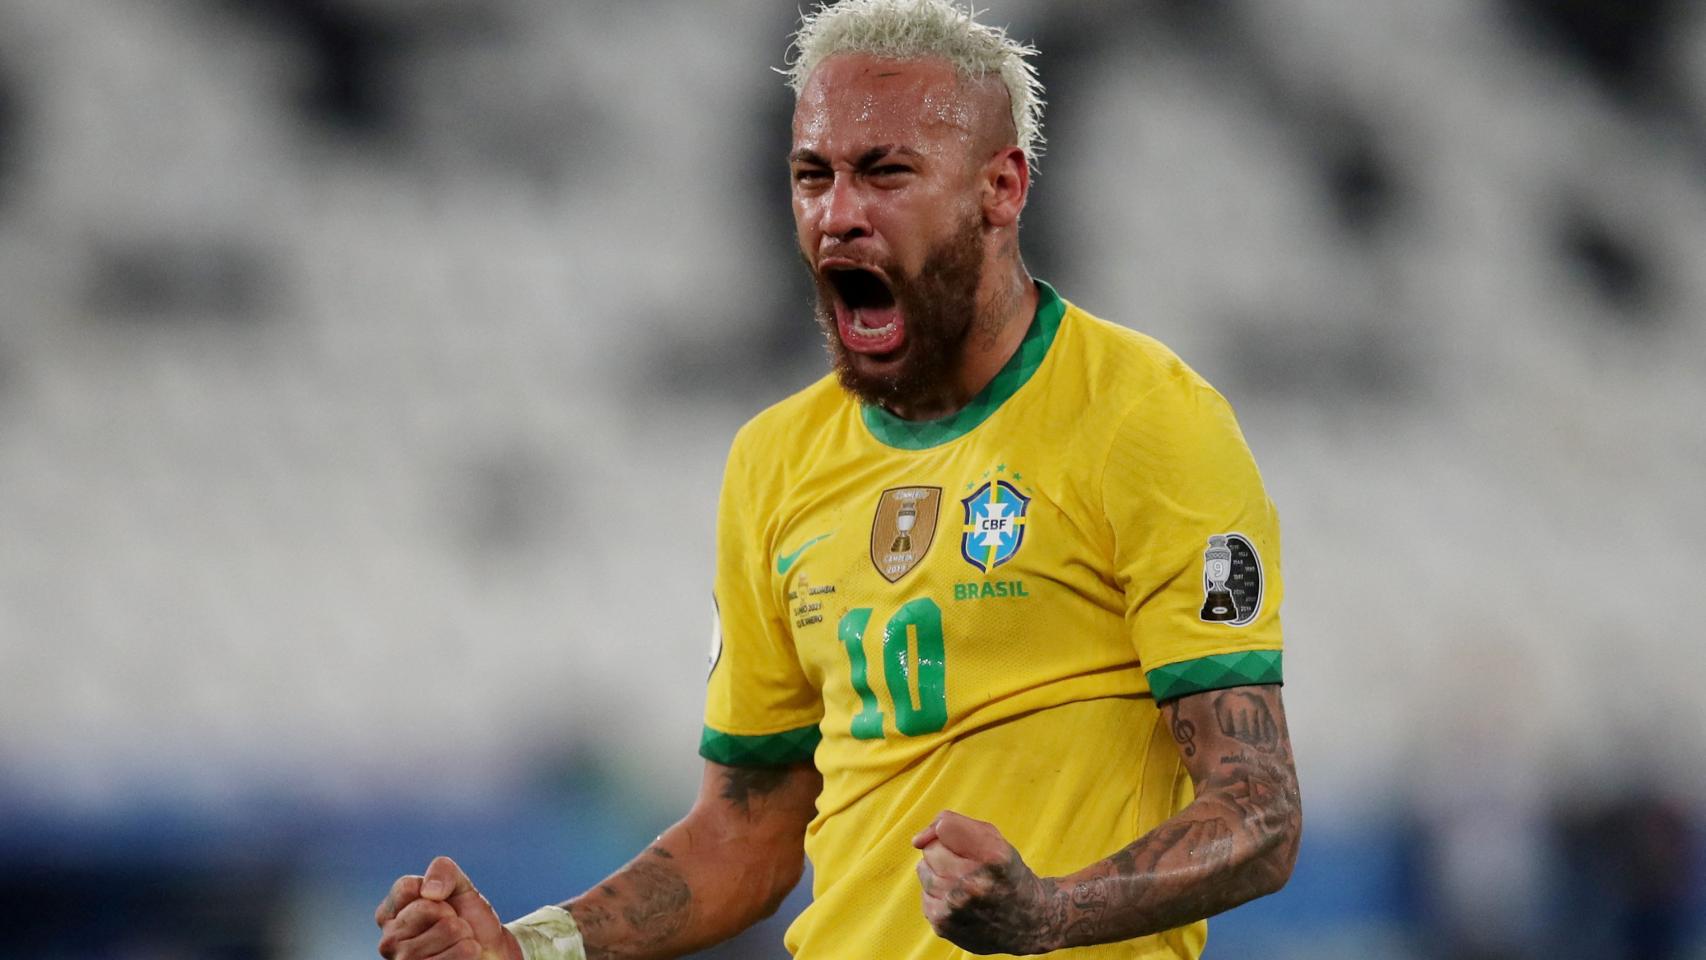 El Mundial de Neymar: dos récords para ser el mejor de siempre en Brasil y  batir a Ronaldo y Pelé